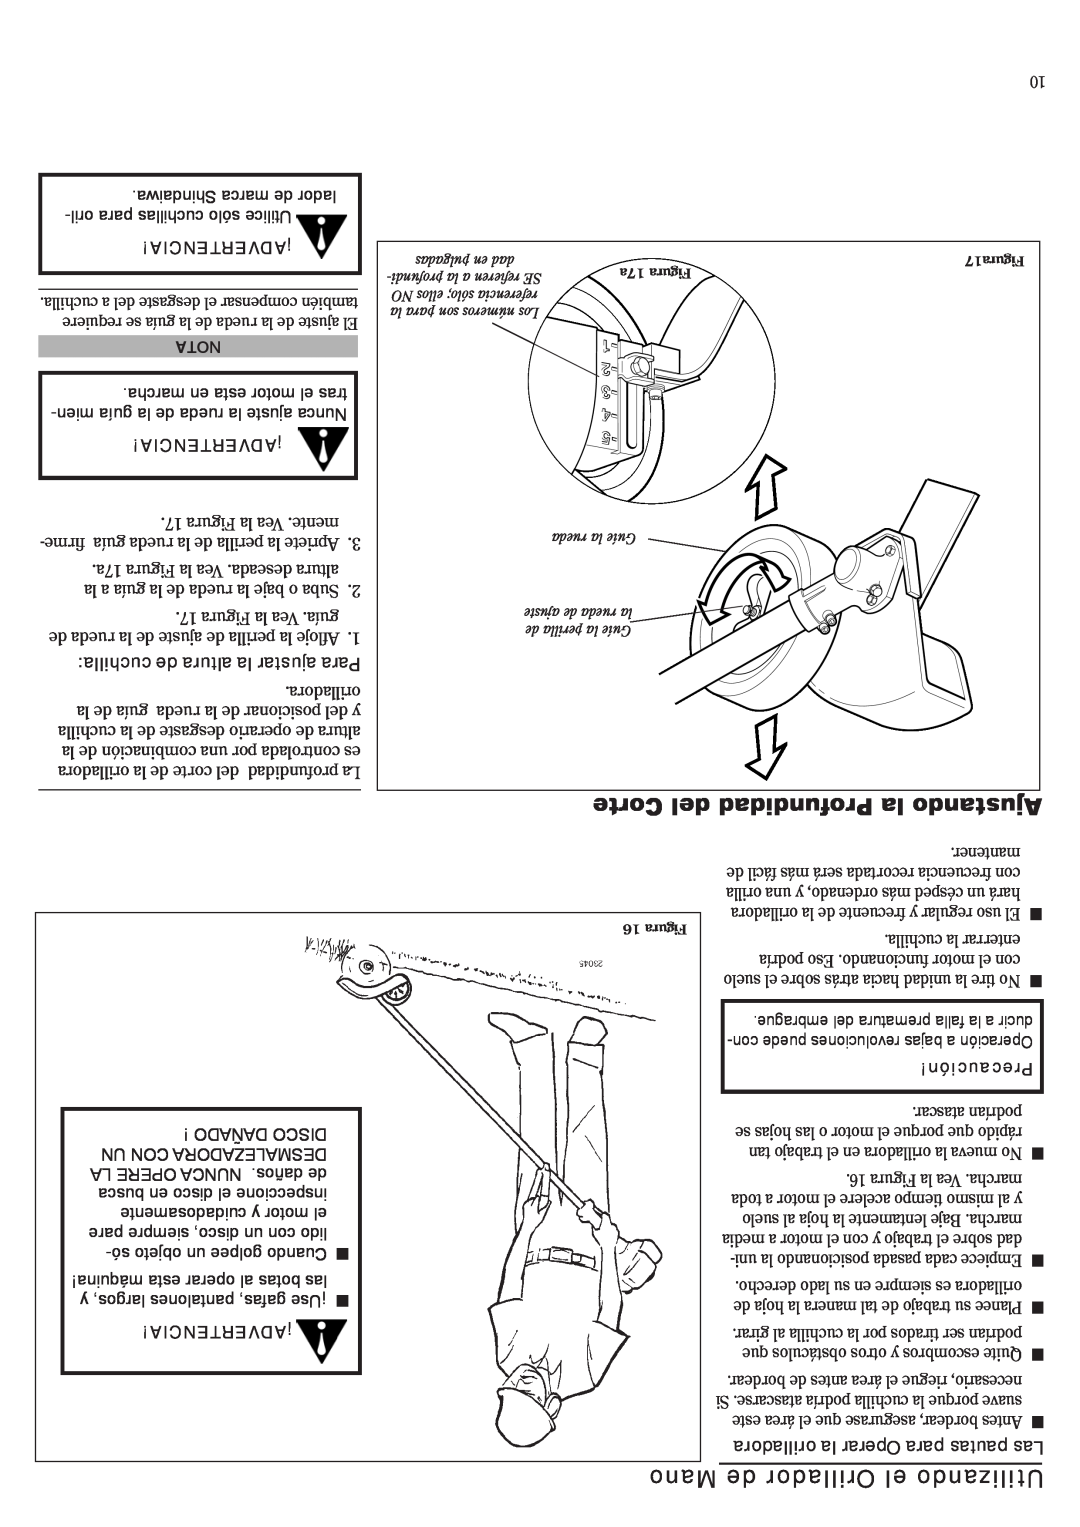 Shindaiwa 81532, LE242 manual Corte del Profundidad la Ajustando, Mano de Orillador el Utilizando, ¡Advertencia, Precaución 